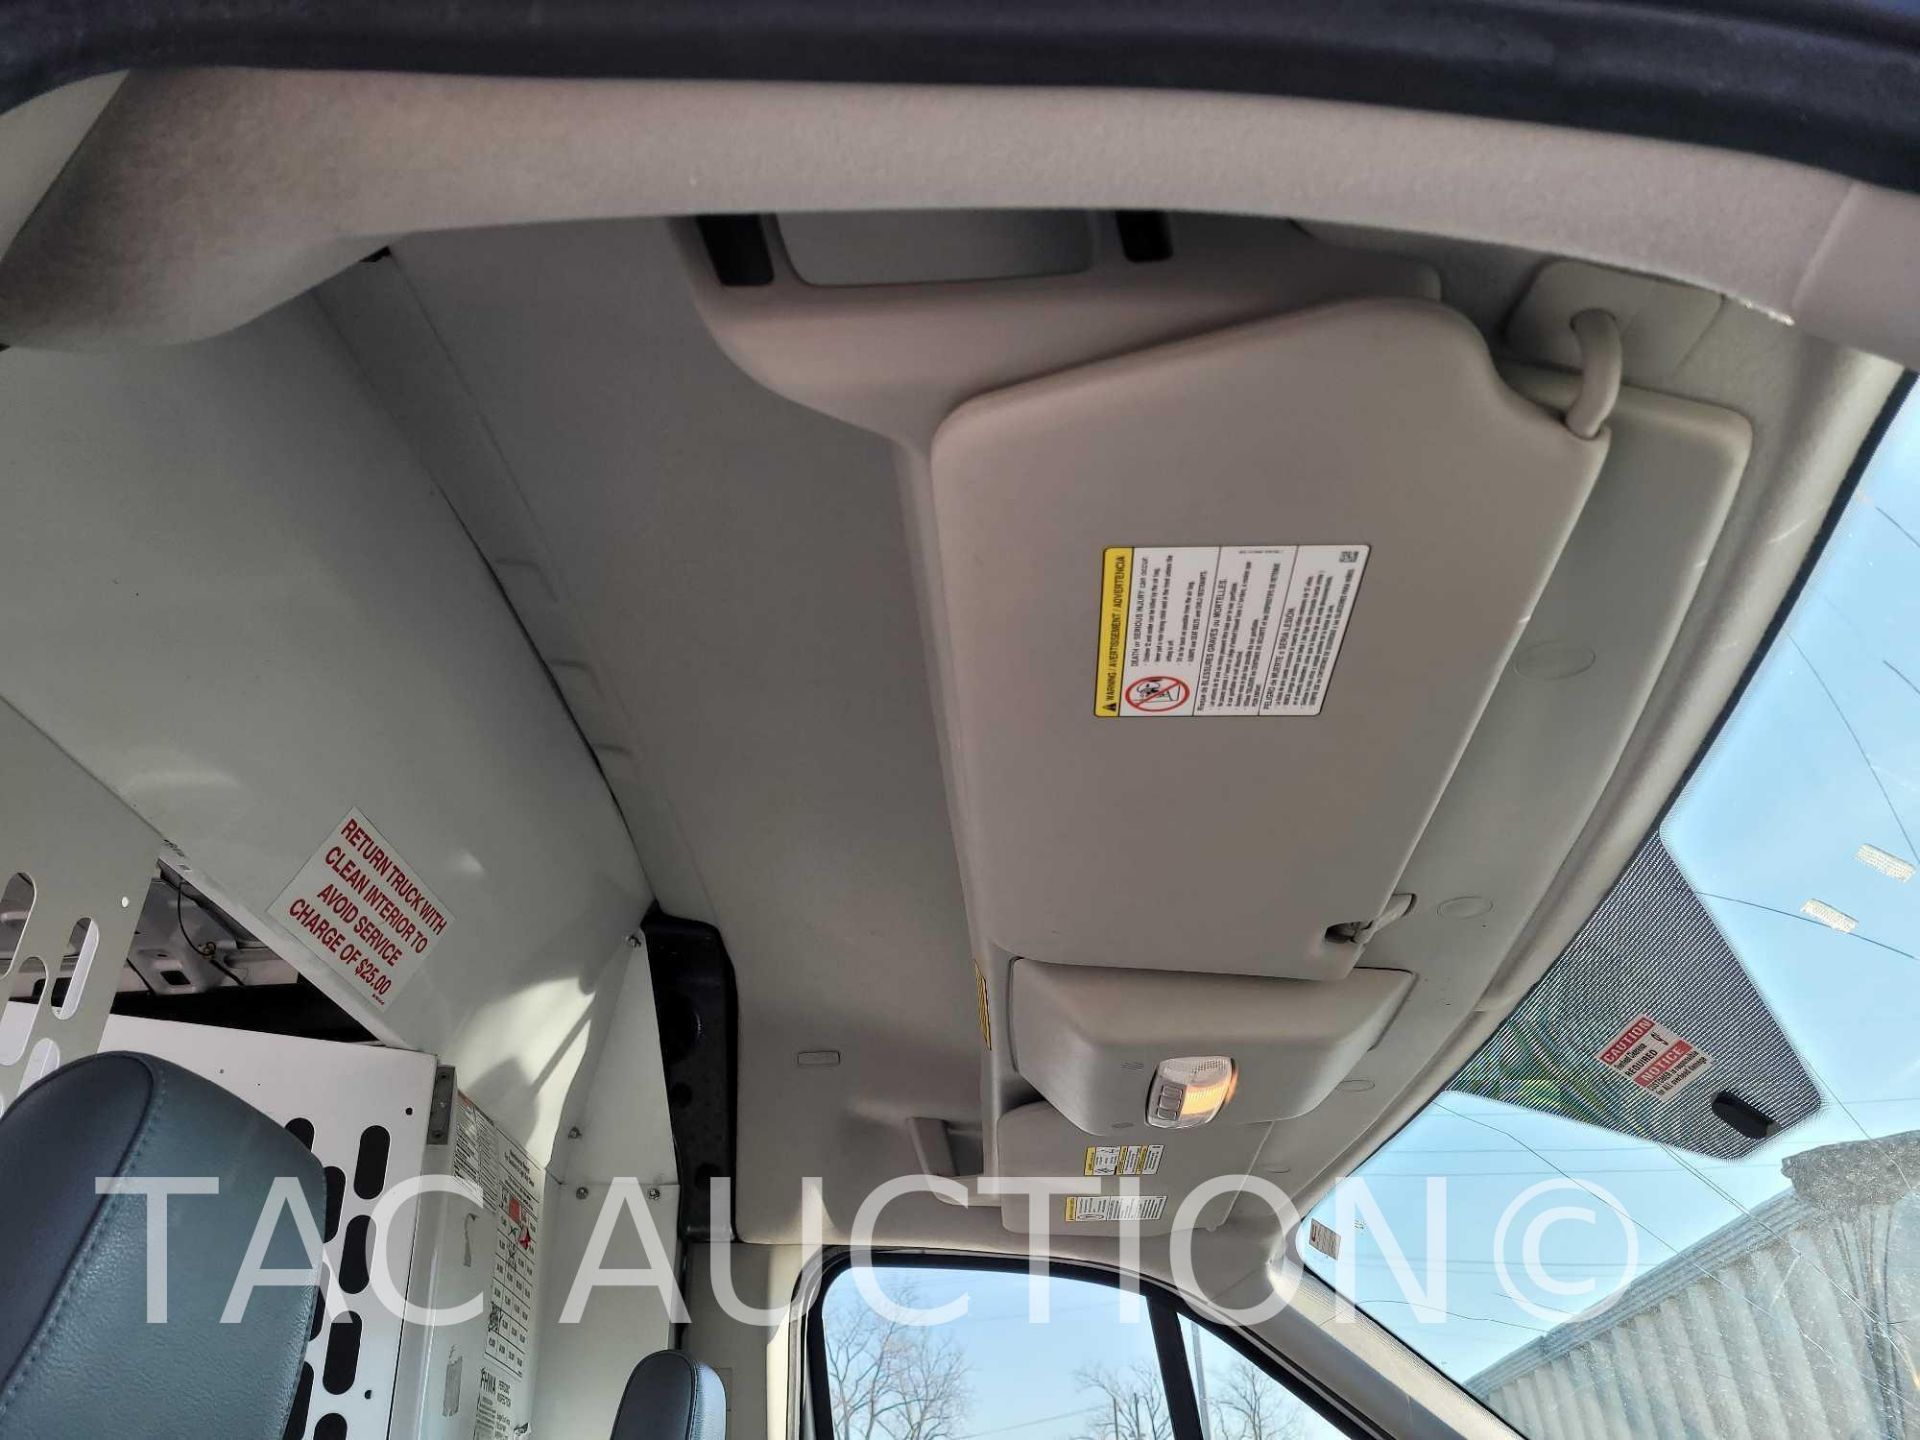 2019 Ford Transit 150 Cargo Van - Image 17 of 51